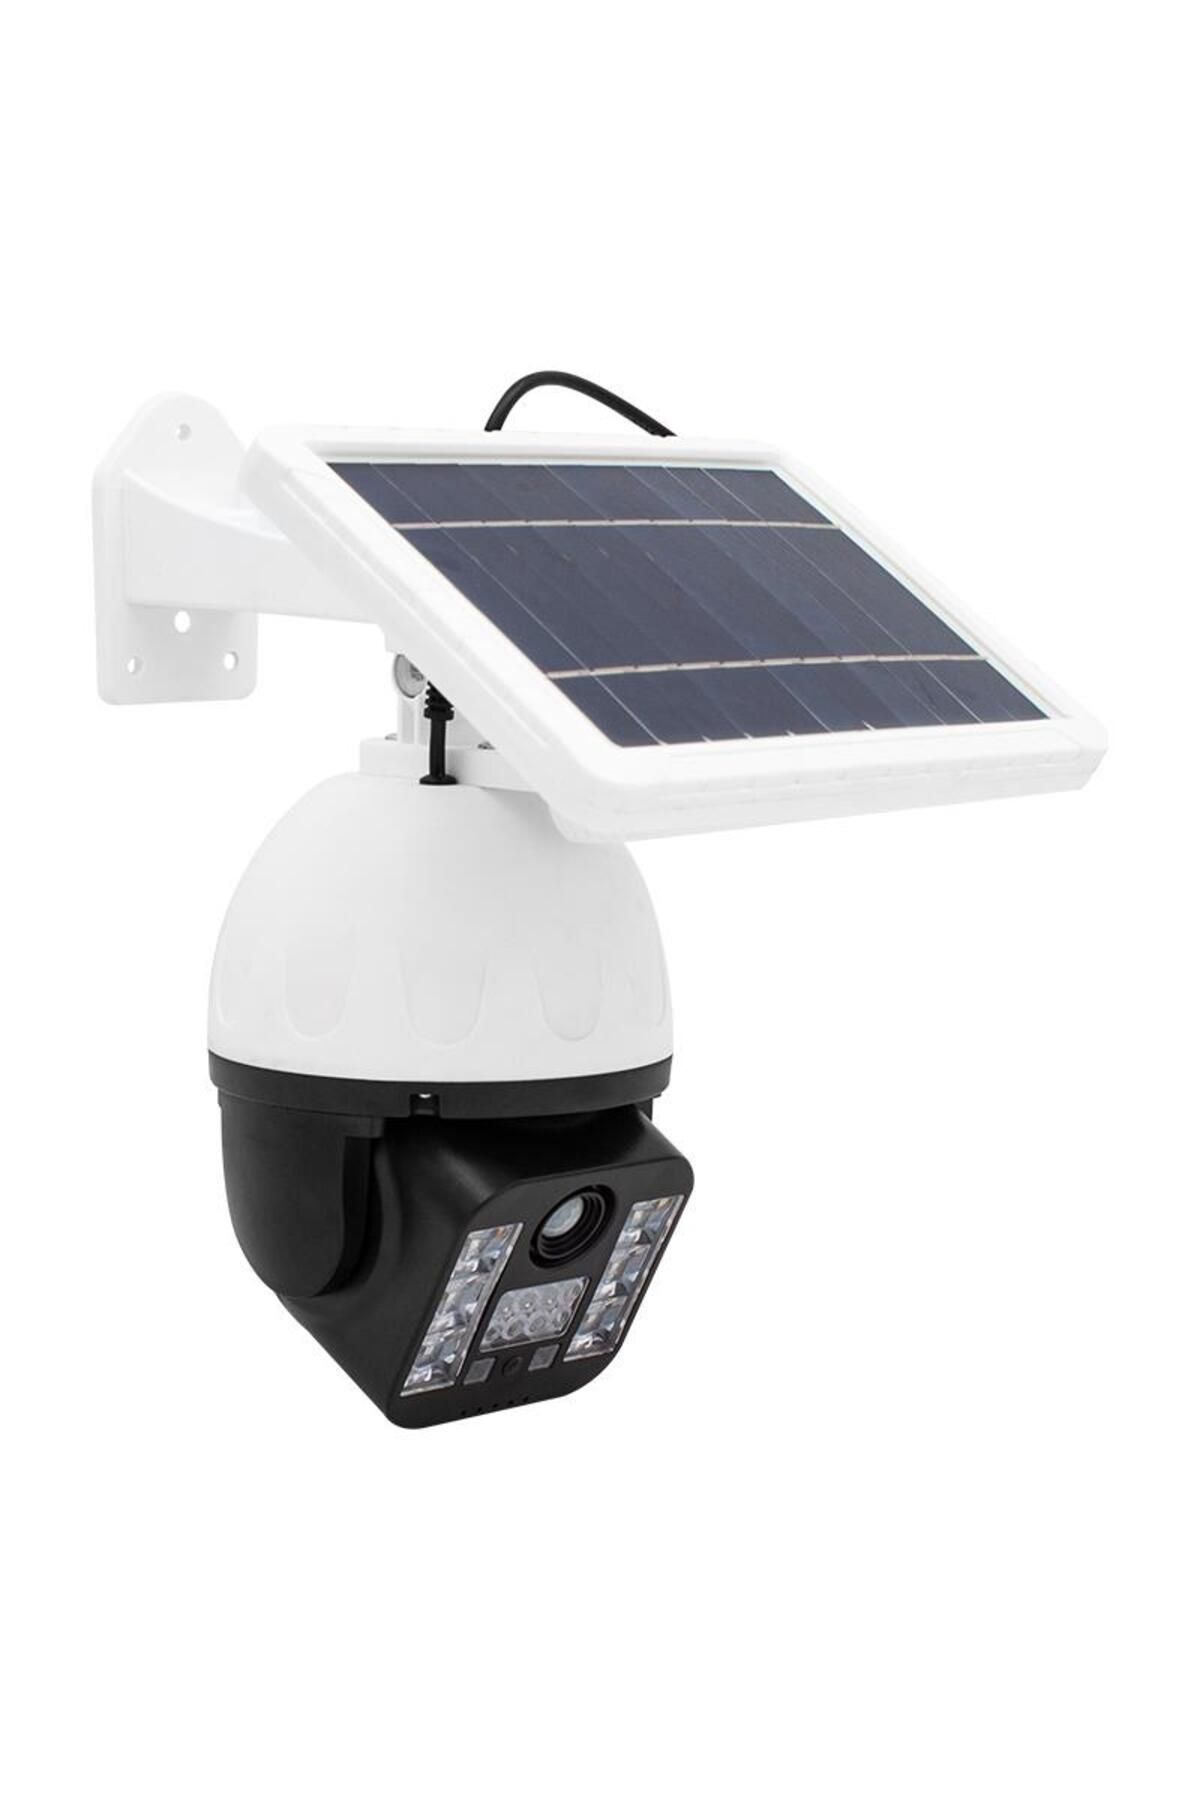 Powermaster T-30 Solar Panelli Hareket Sensörlü Ledli Maket Kamera